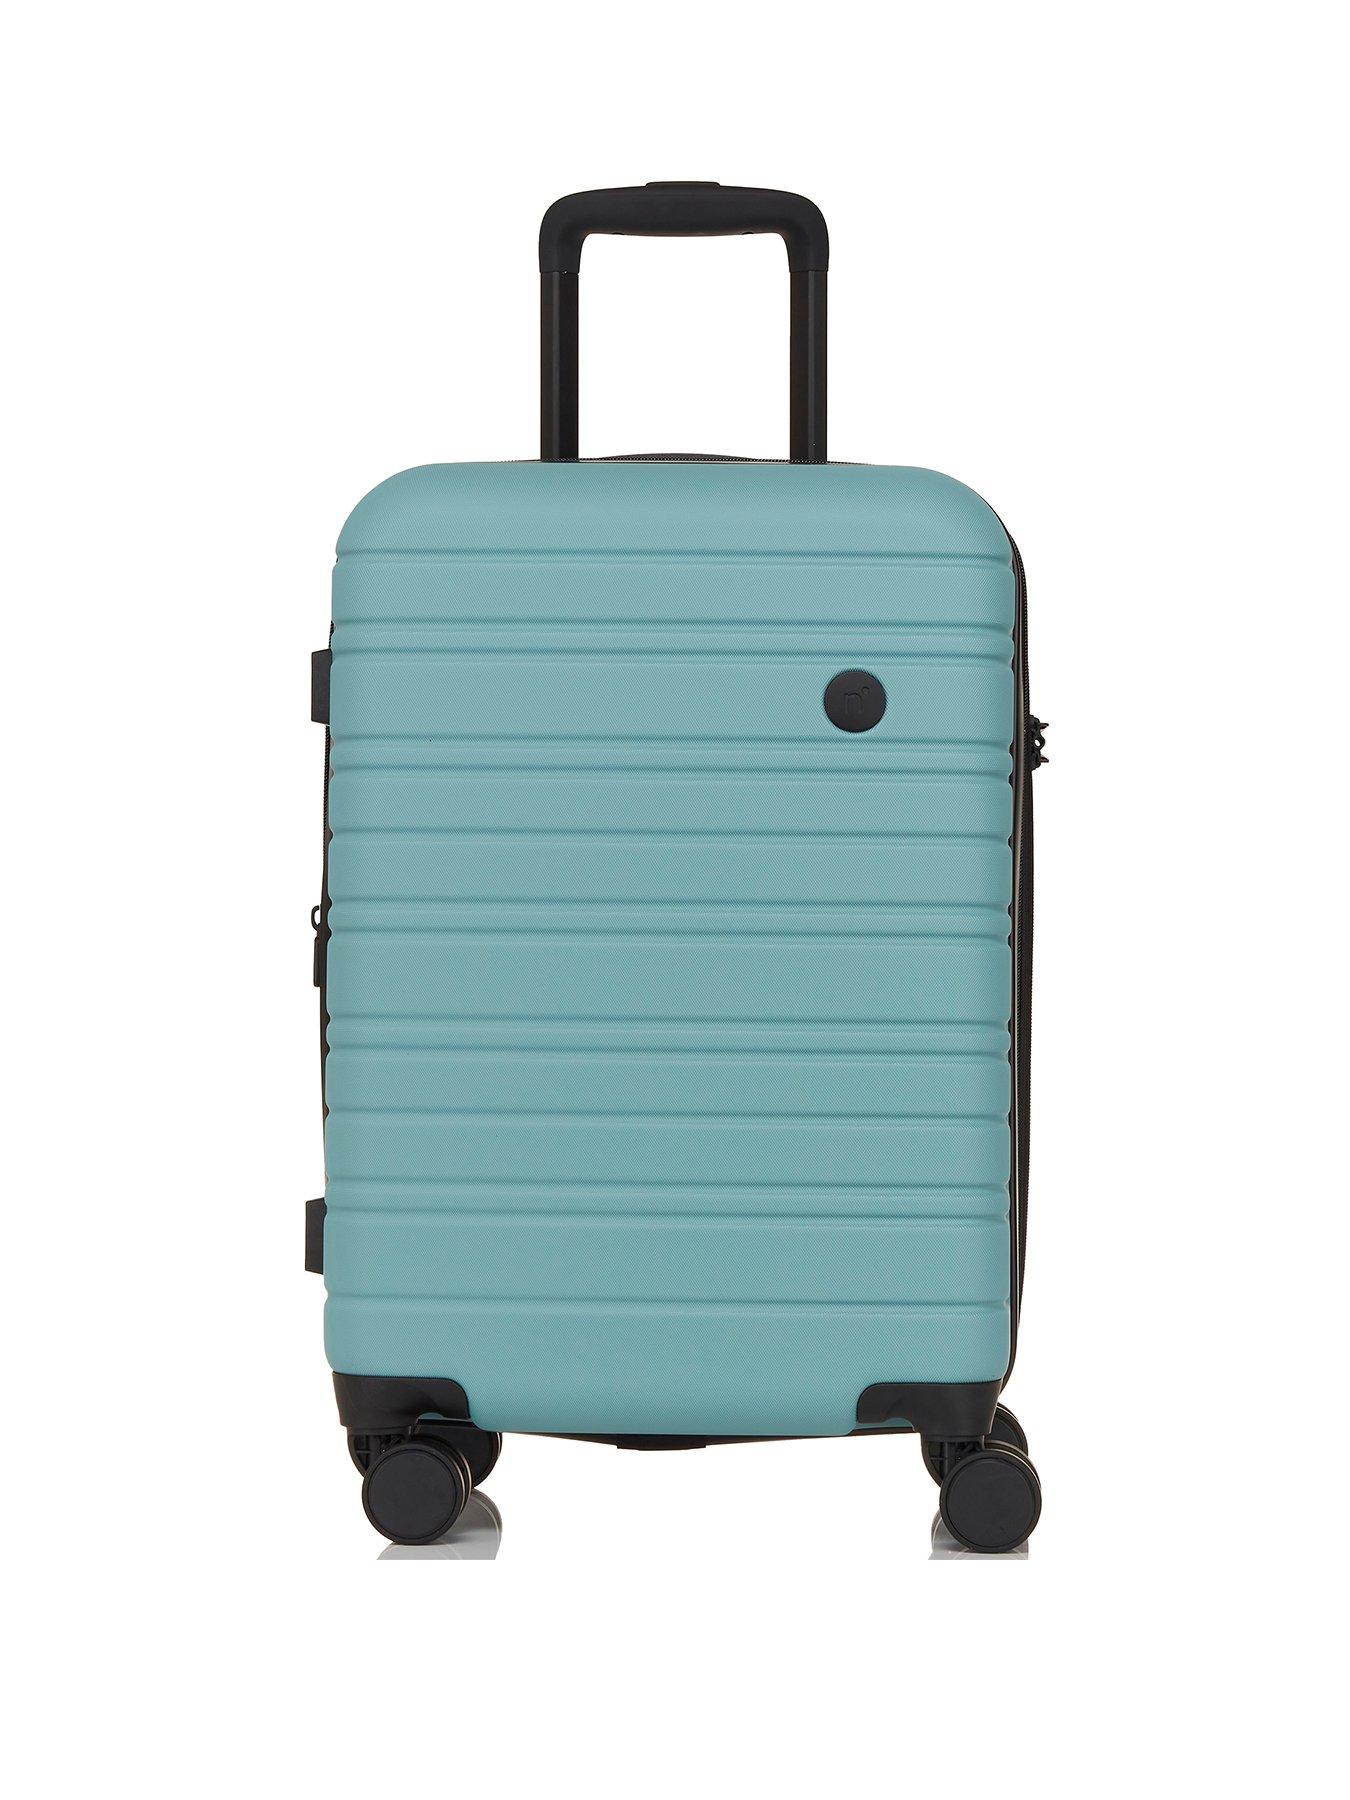 Nere Stori Suitcase Small 55Cm -Mineral